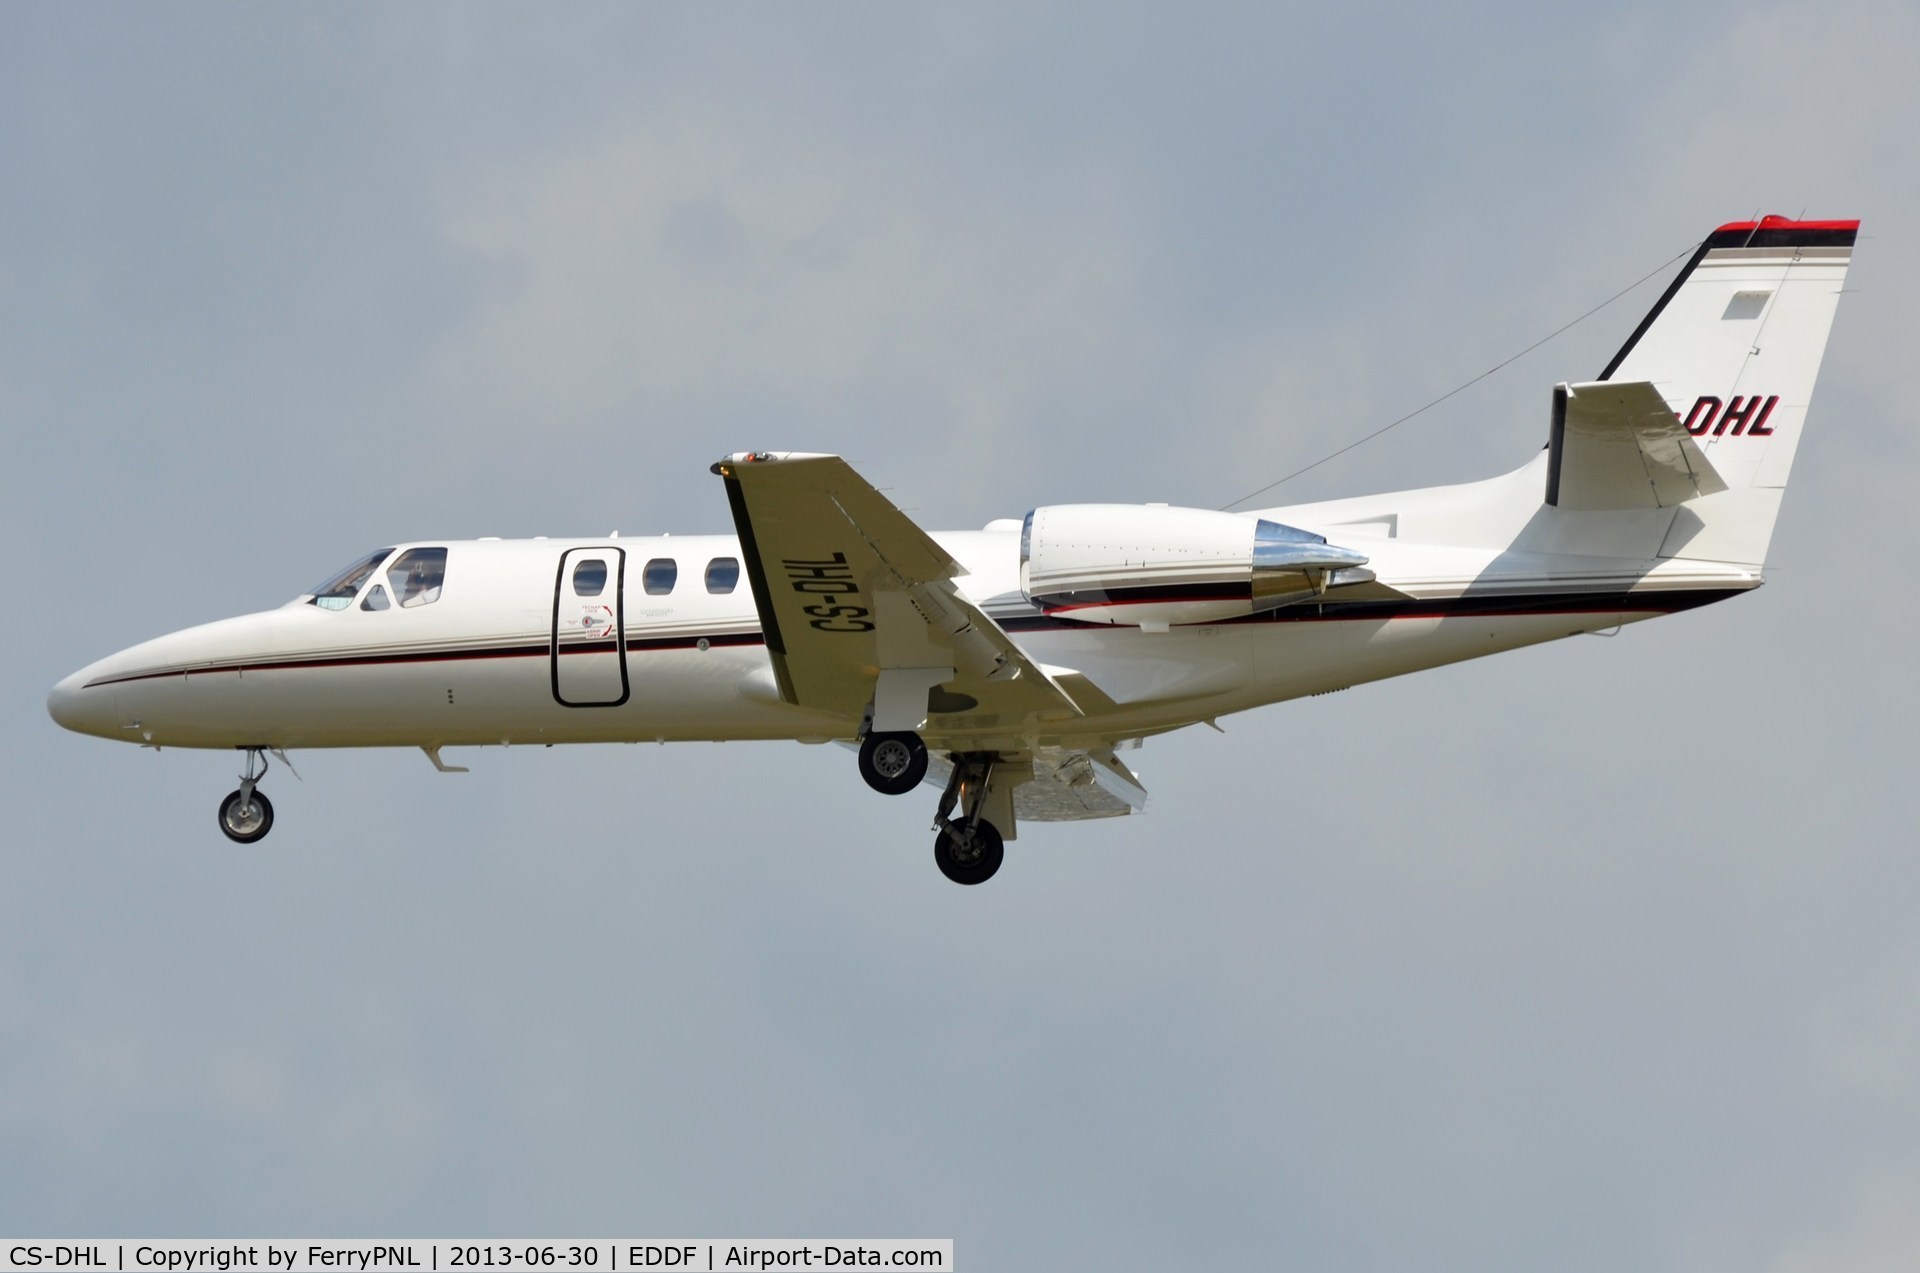 CS-DHL, 2004 Cessna 550 Citation Bravo C/N 550-1092, Netjets Ce550 landing in FRA